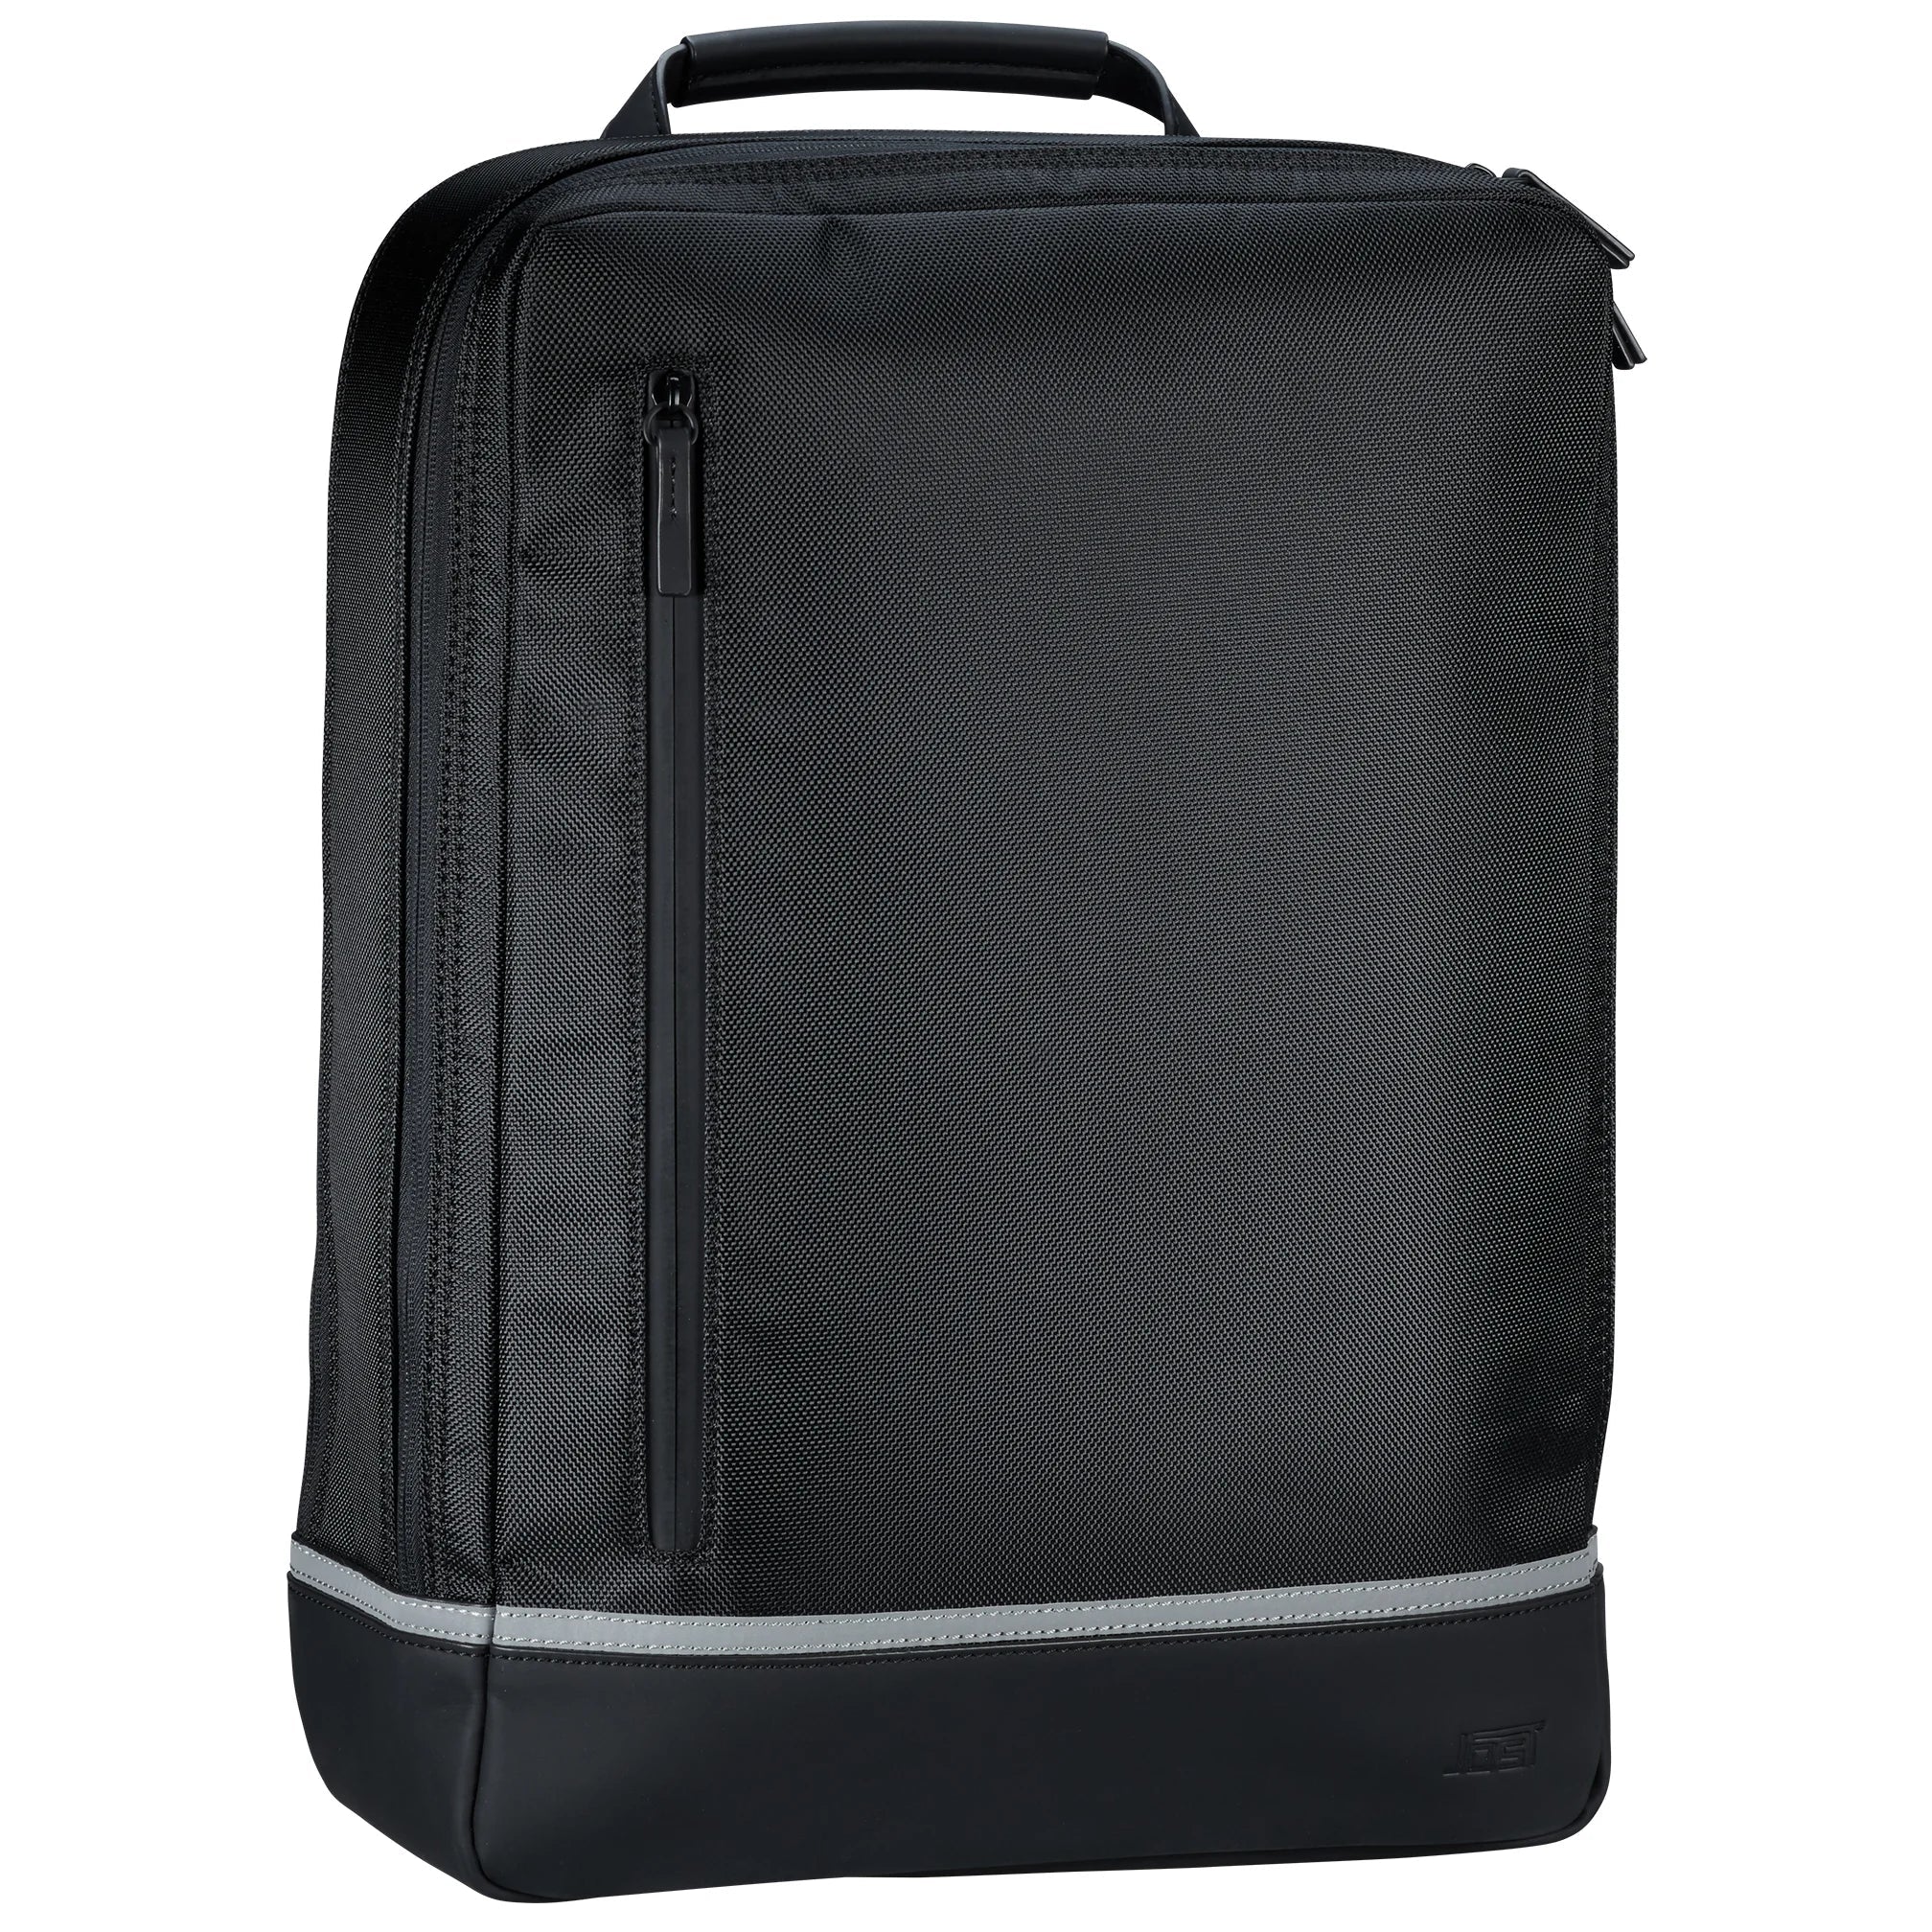 Jost Backpackspecial Daypack Backpack 44 cm - Black